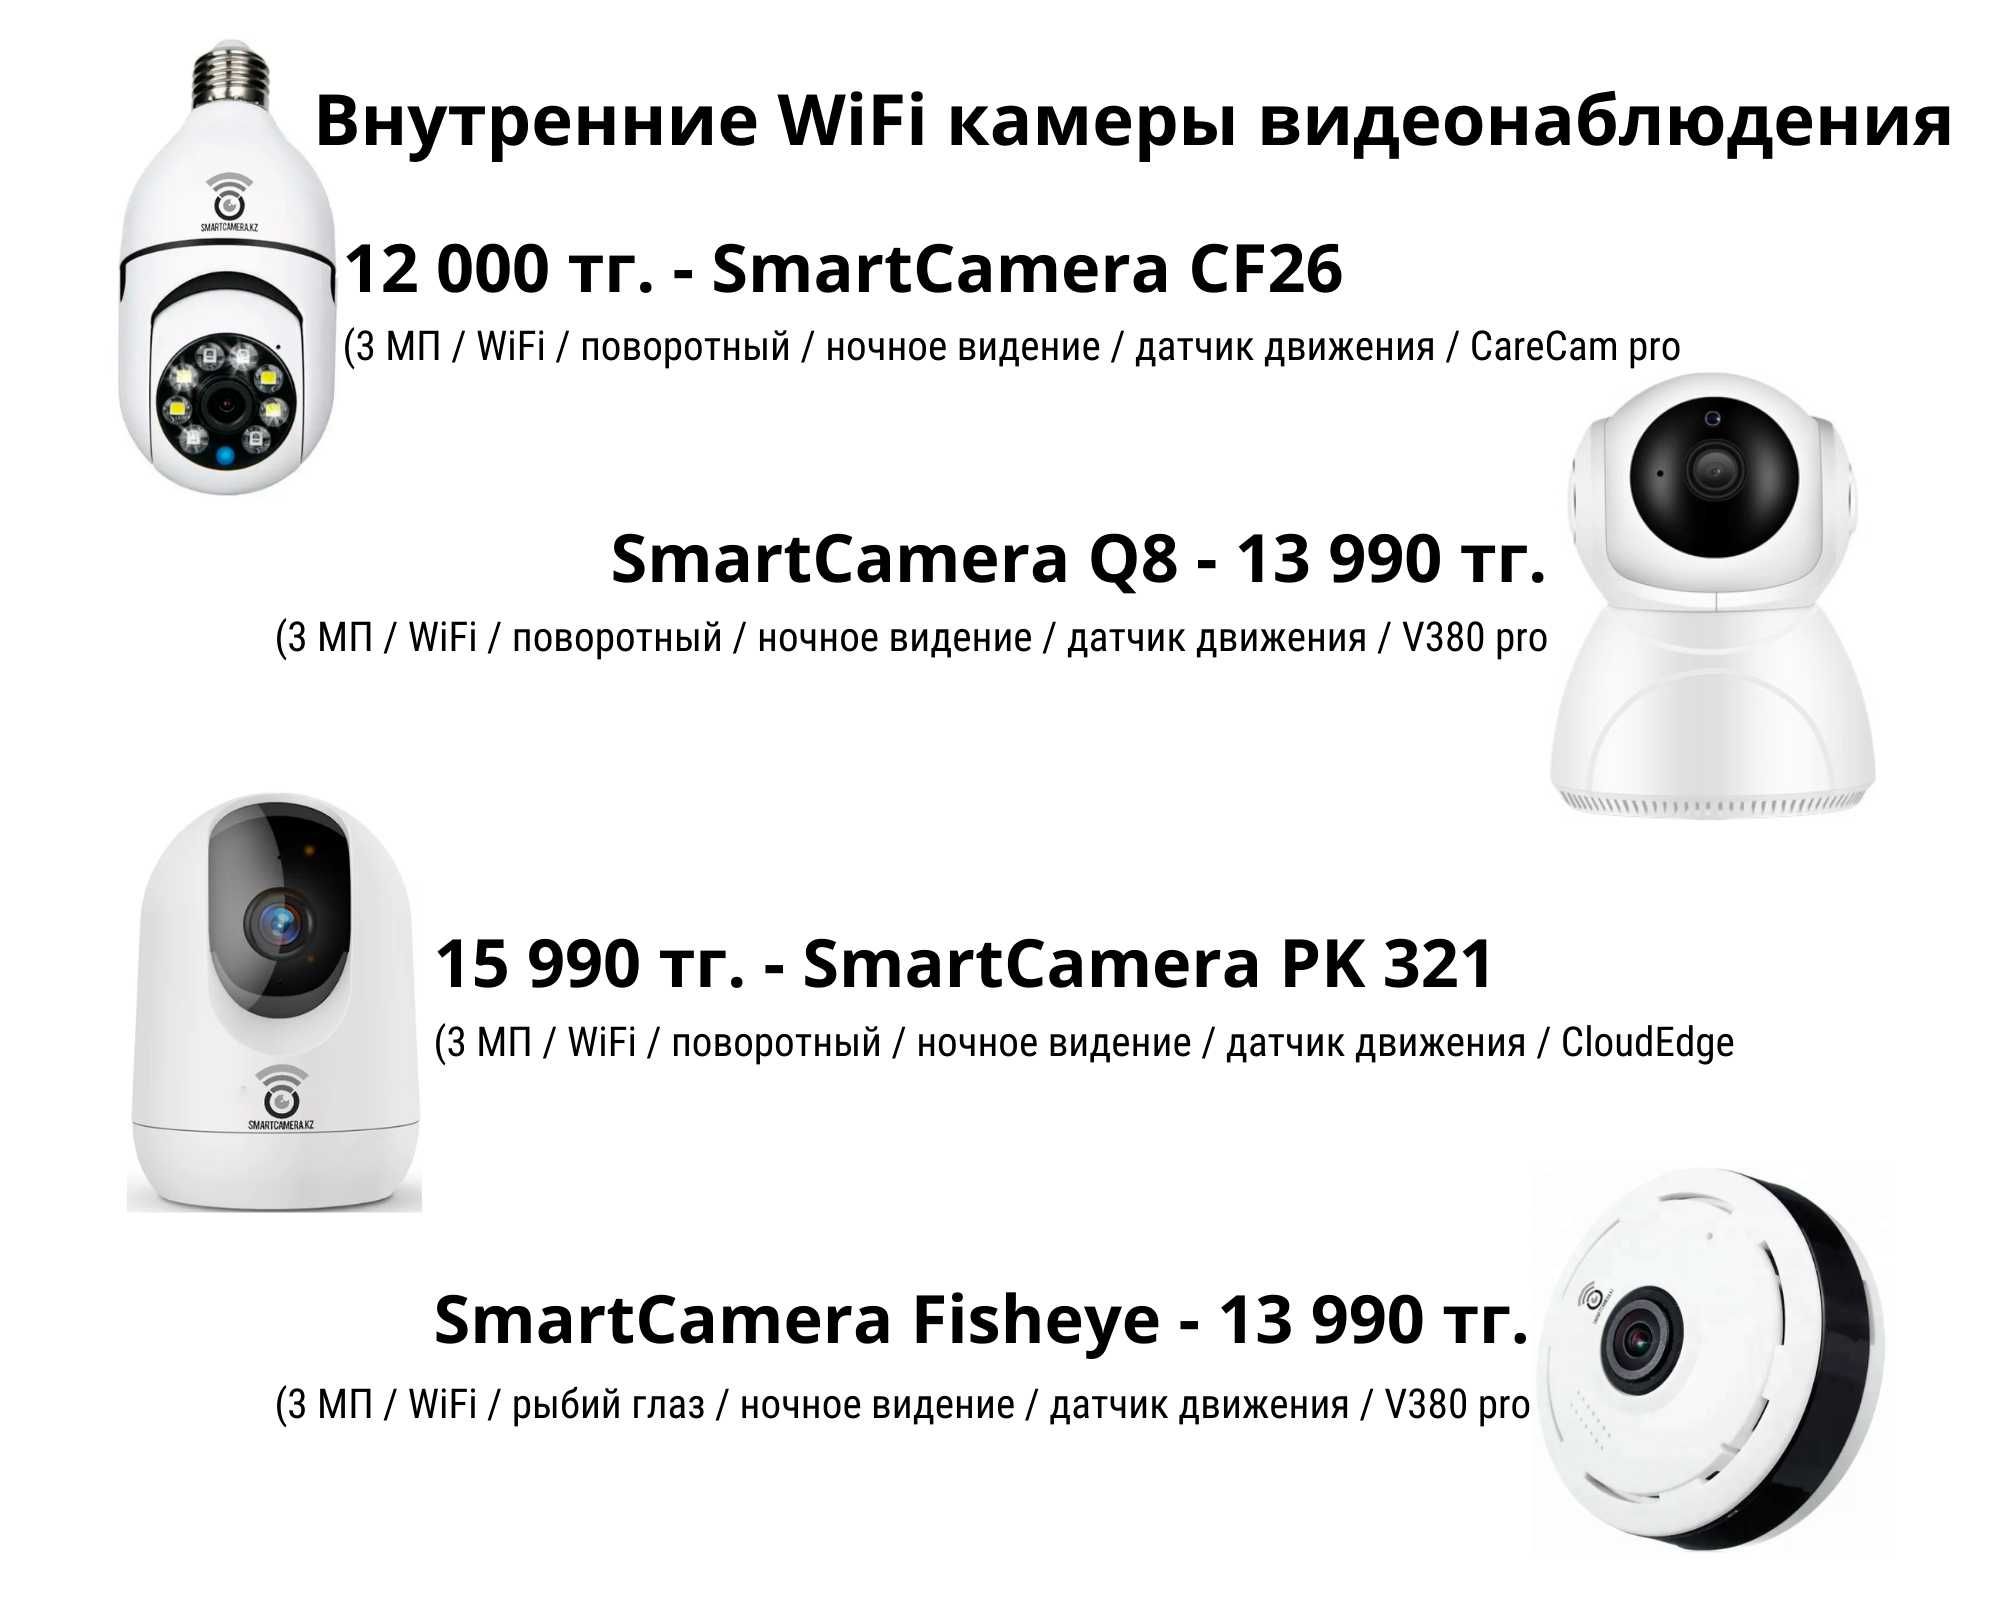 WiFi и 4G камеры видеонаблюдения для дома, дачи и бизнеса